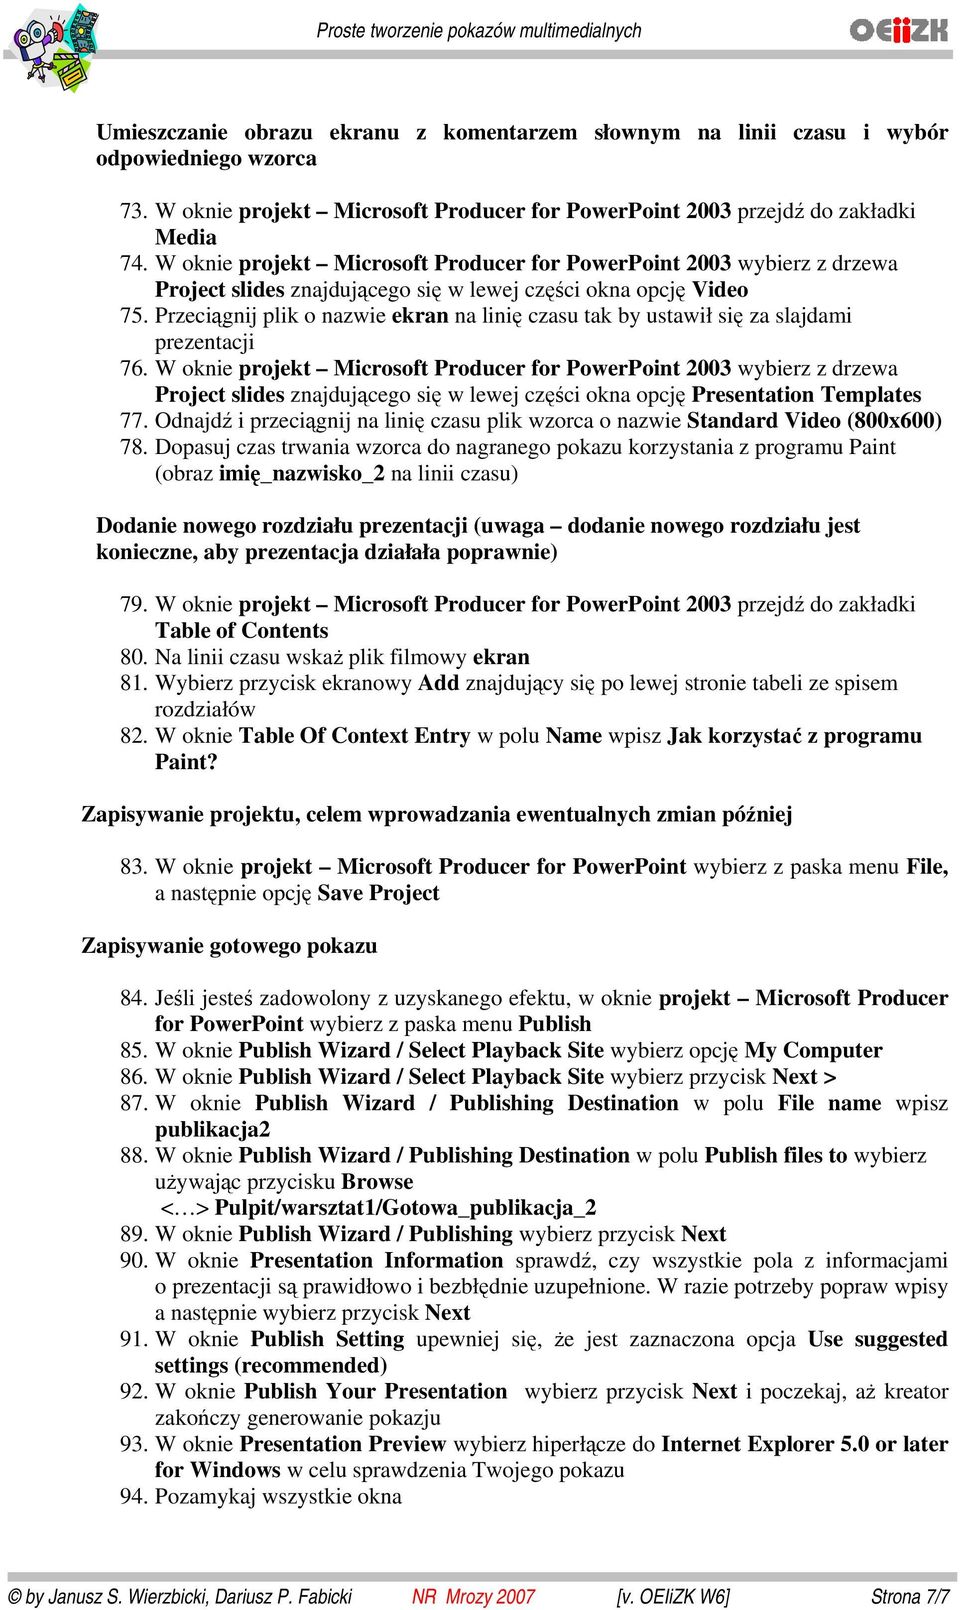 W oknie projekt Microsoft Producer for PowerPoint 2003 wybierz z drzewa Project slides znajdującego się w lewej części okna opcję Video 75.